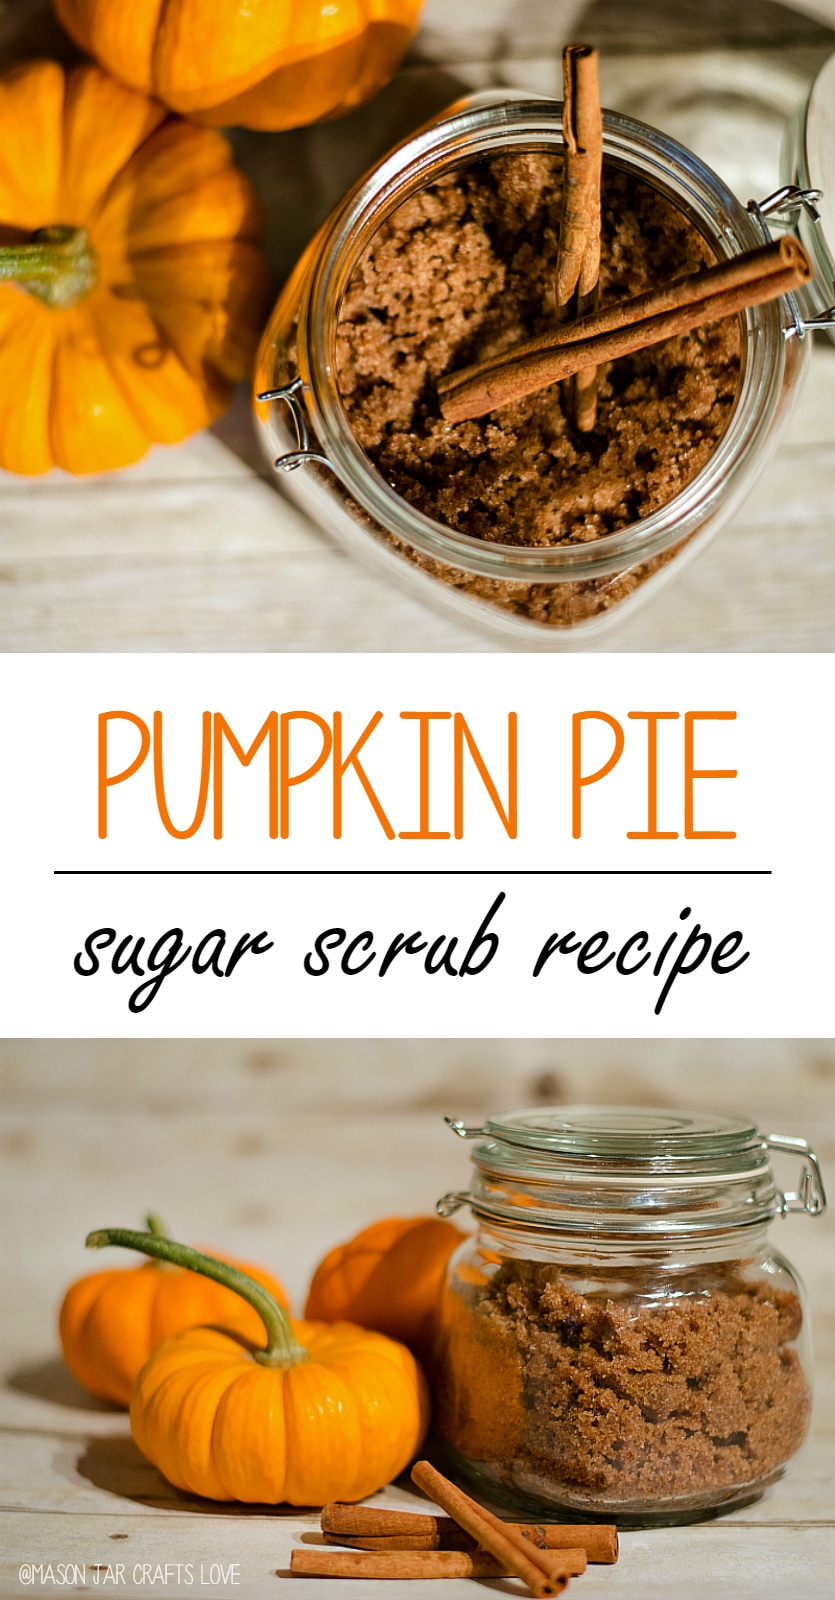 Sugar Scrub Recipe: Pumpkin Pie Spice